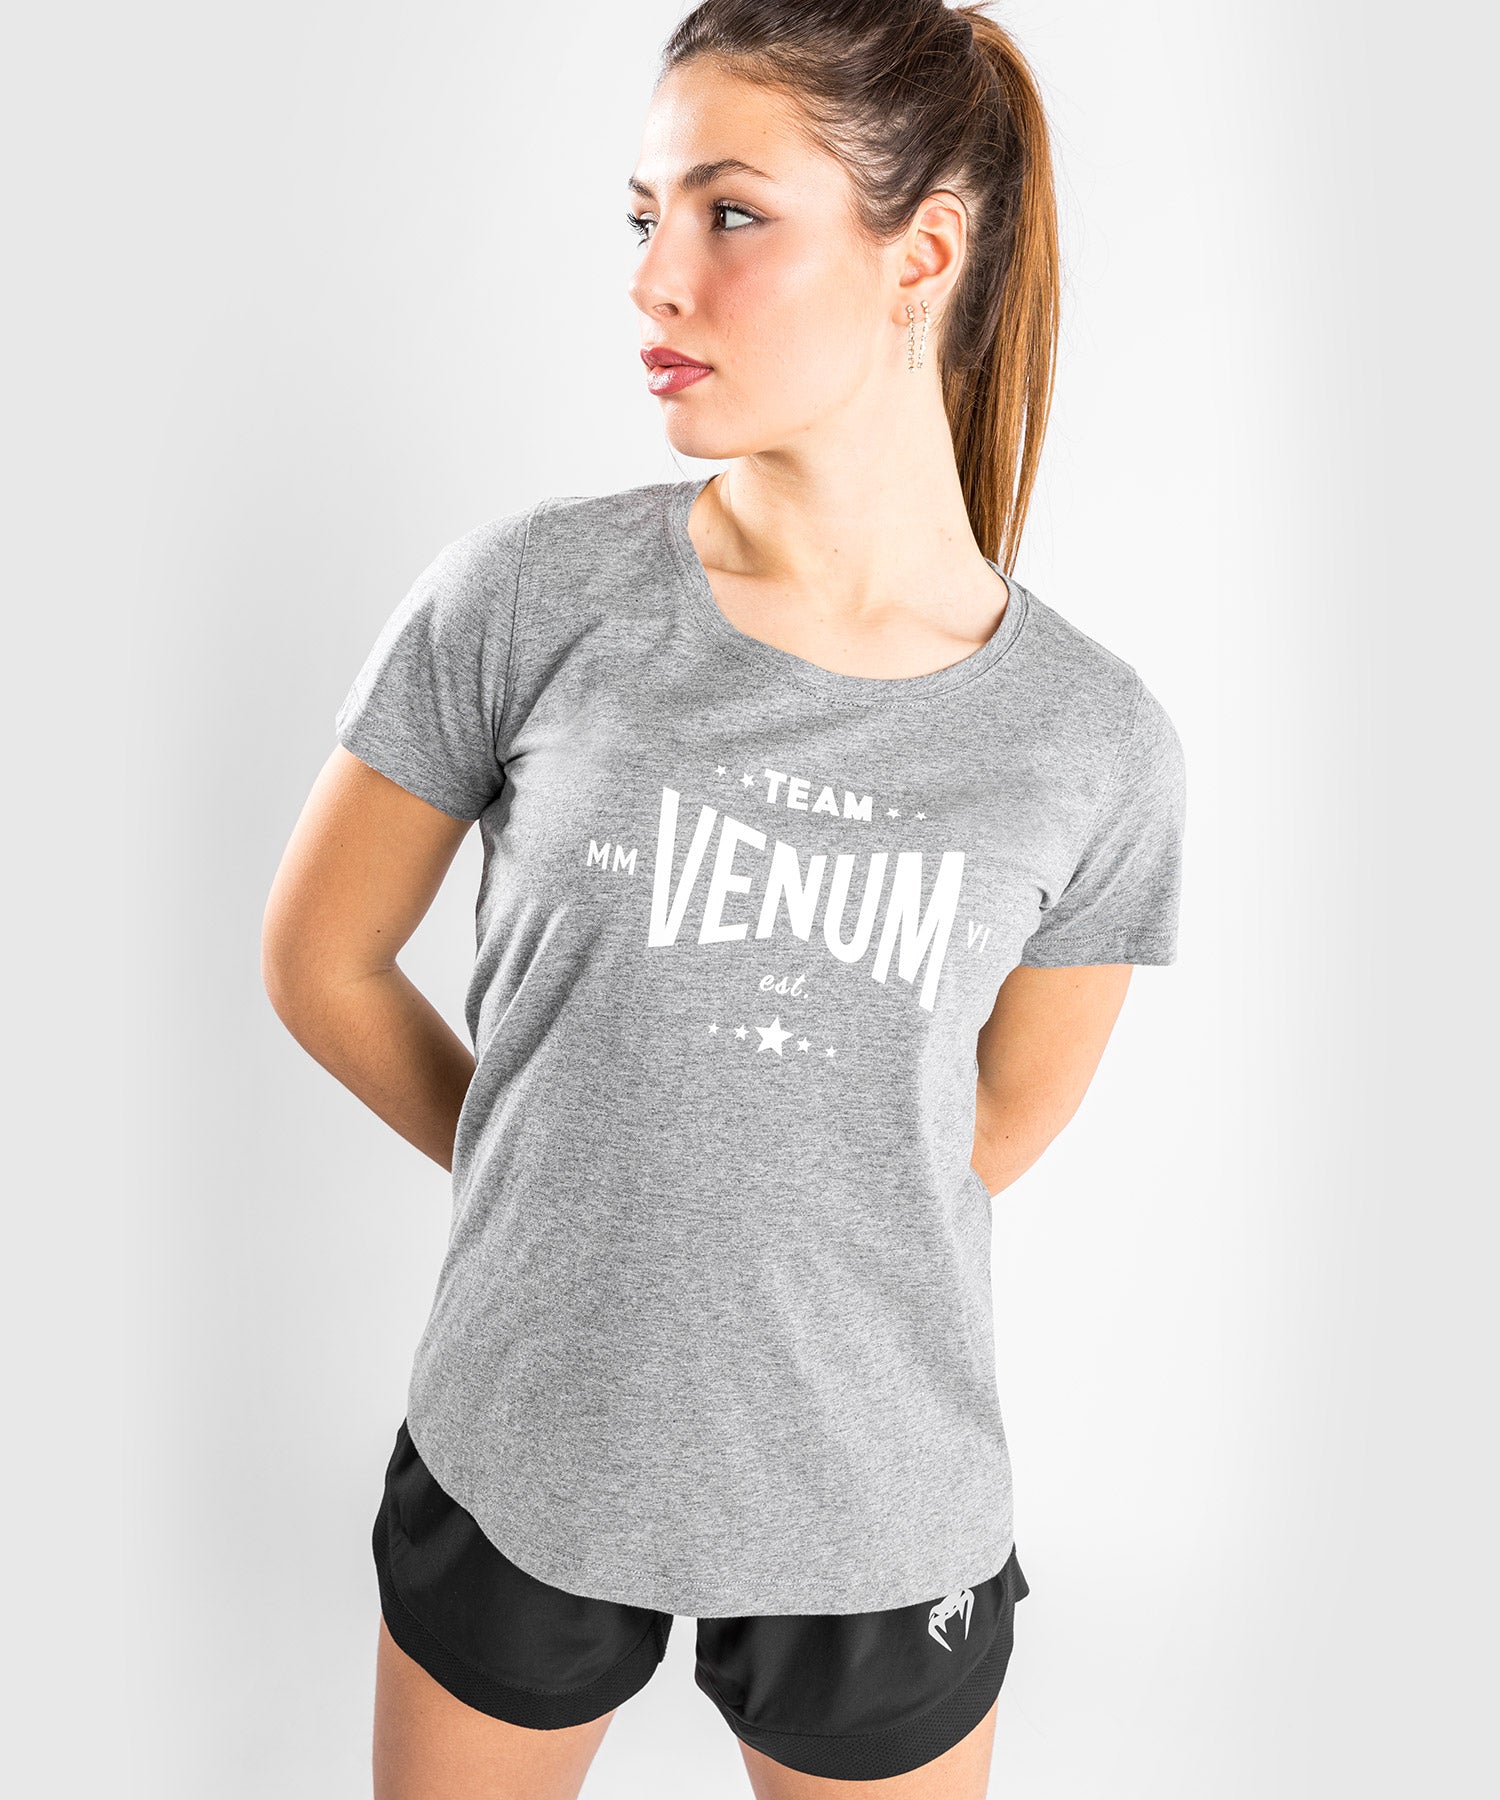 Pantalon de Jogging Venum Classic - Pour Femmes - Gris Chiné Clair